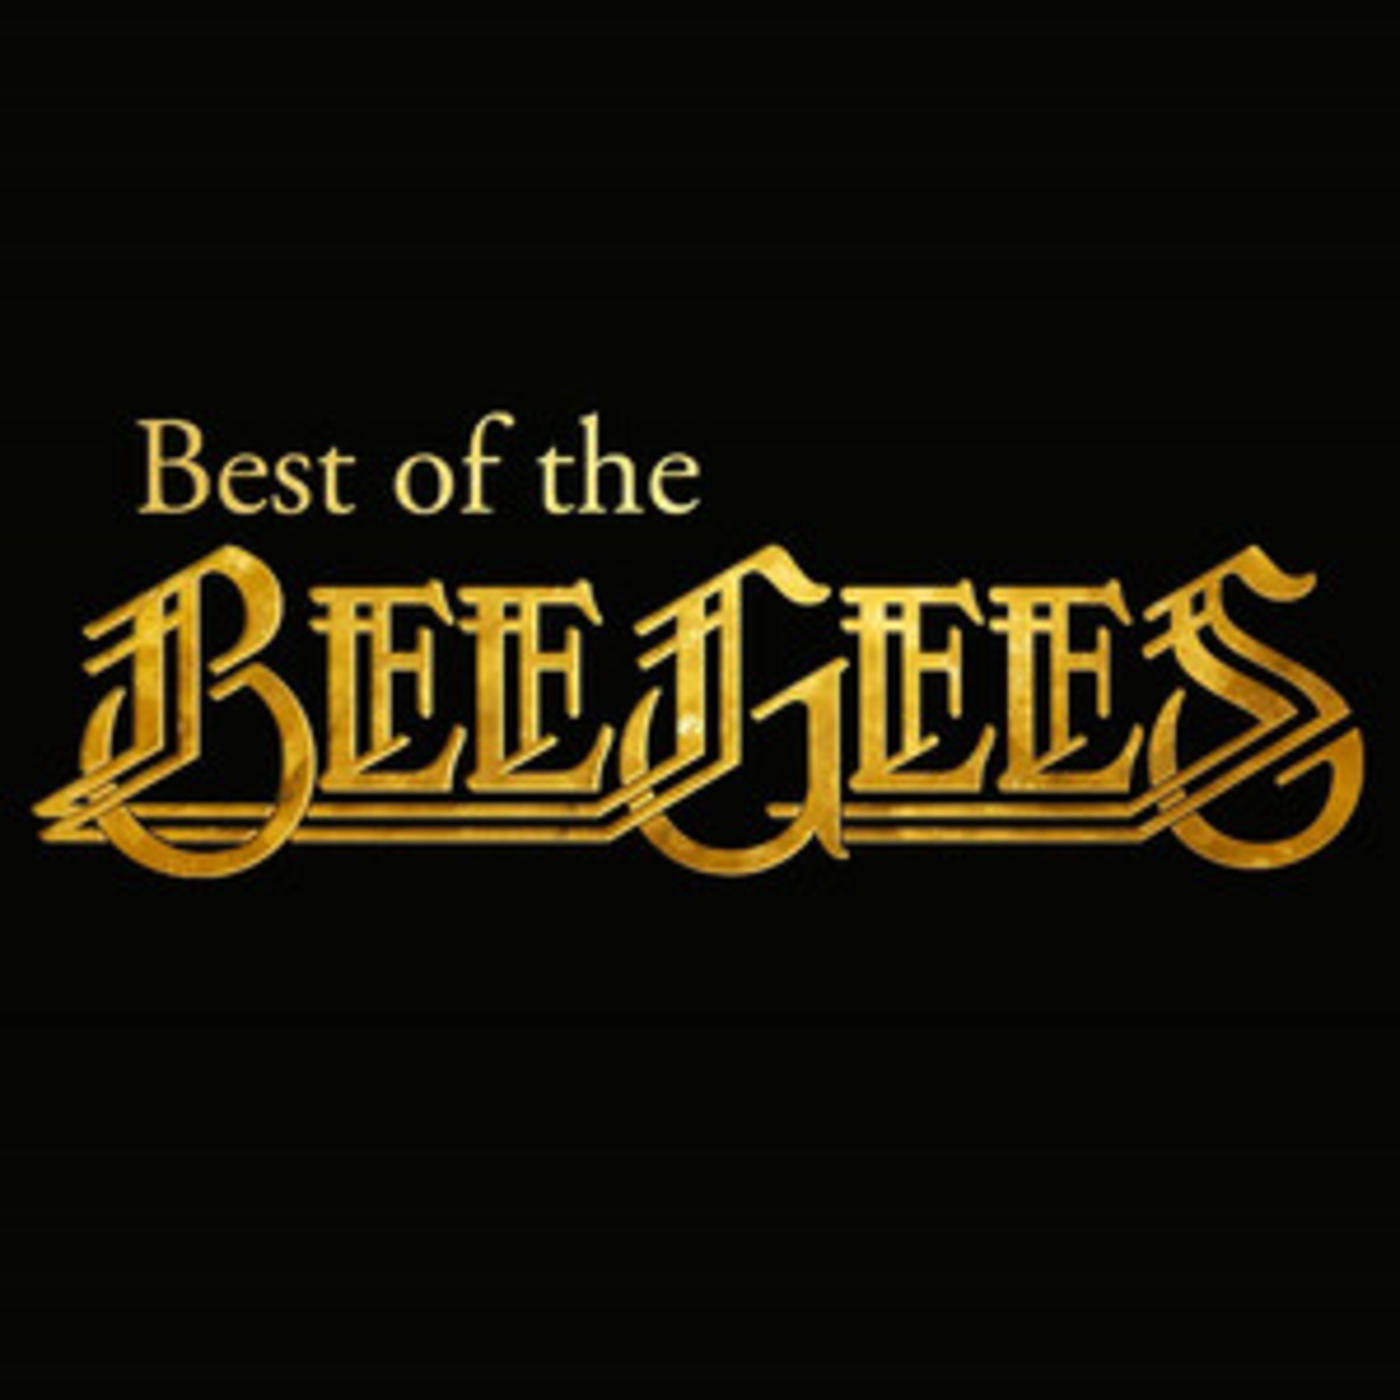 Bee Gees Best Of